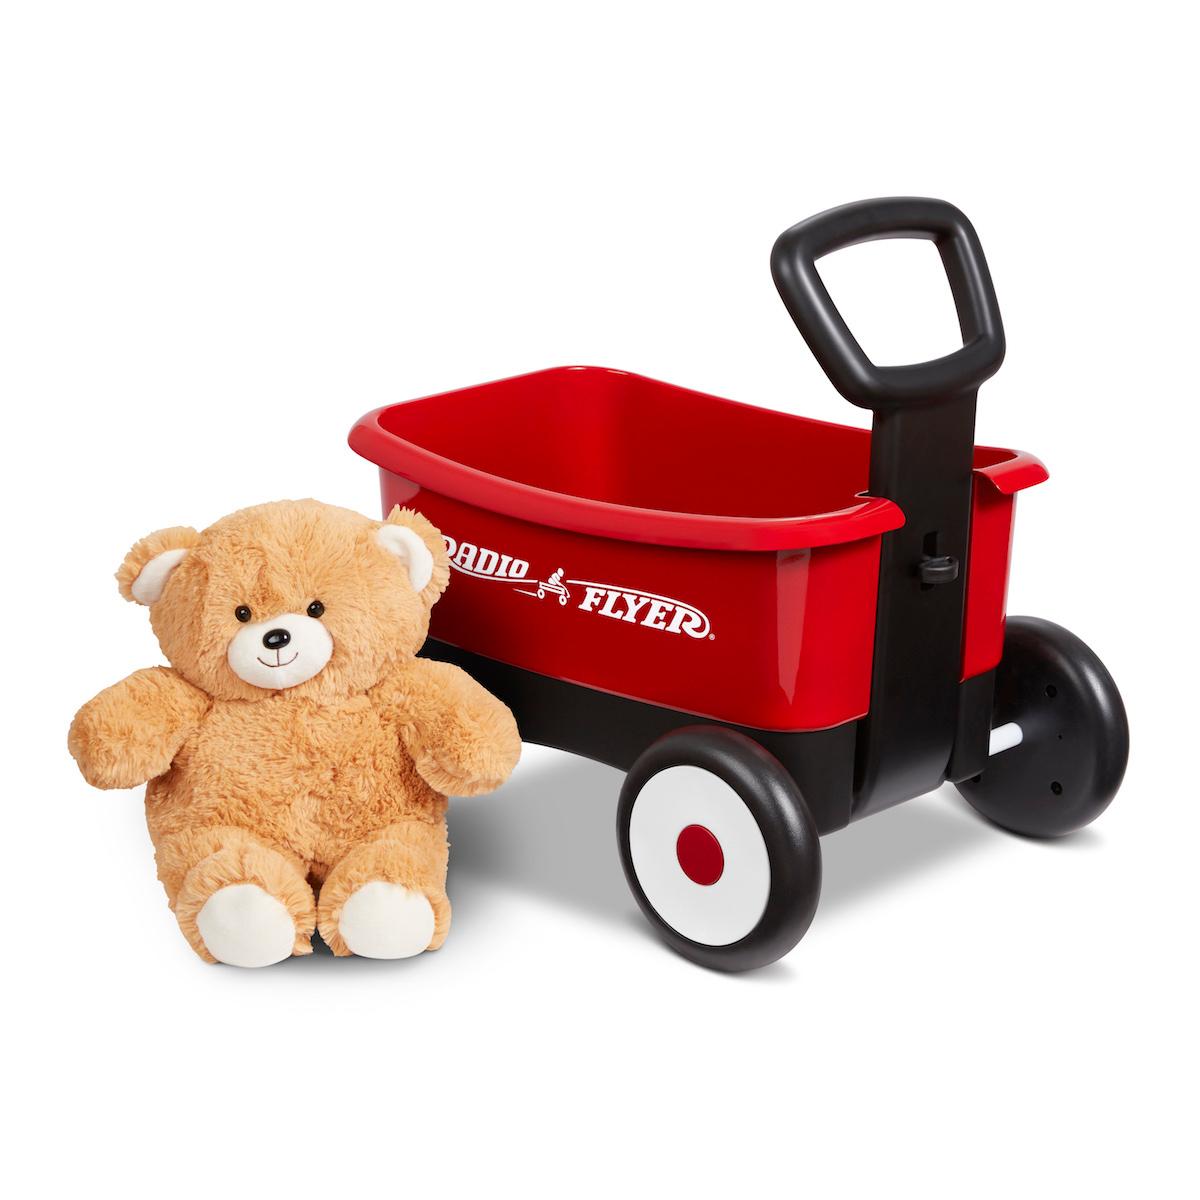 لعبة عربة اطفال 2 في 1 راديو فلاير Radio Flyer My 1st 2 In 1 Wagon With Teddy Bear